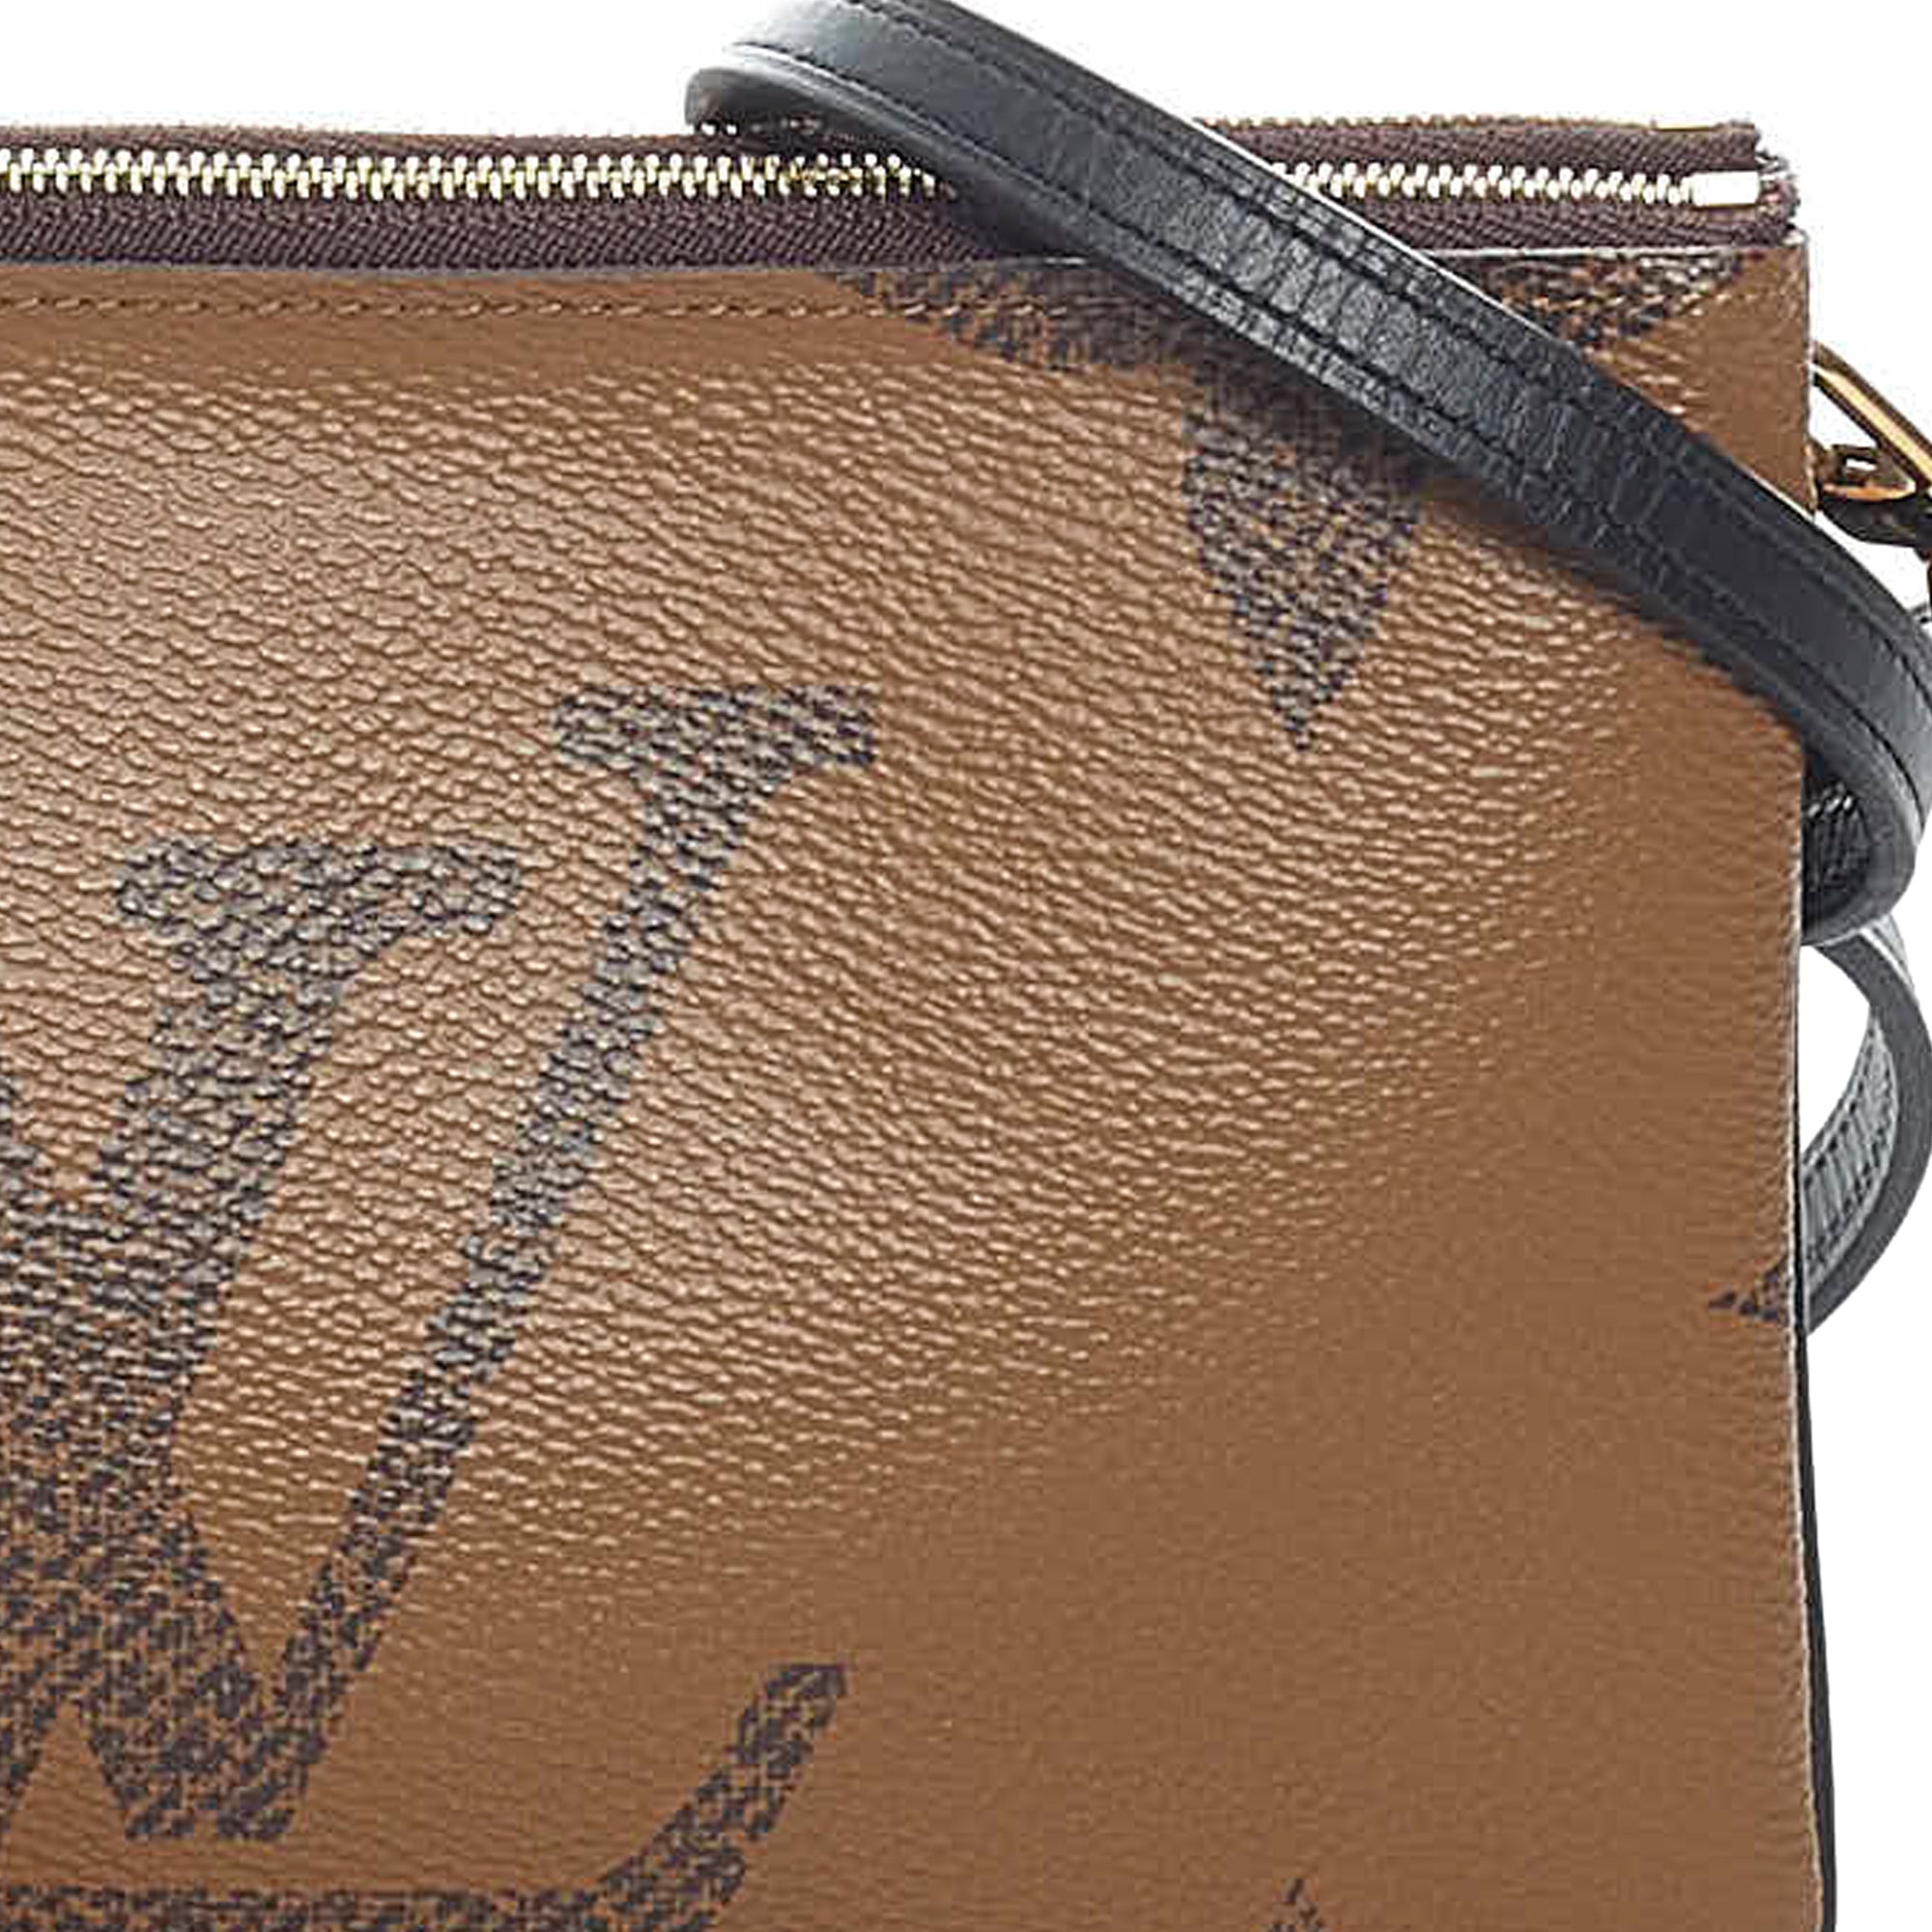 Louis Vuitton Double Zip Pochette Reverse Monogram Unboxing